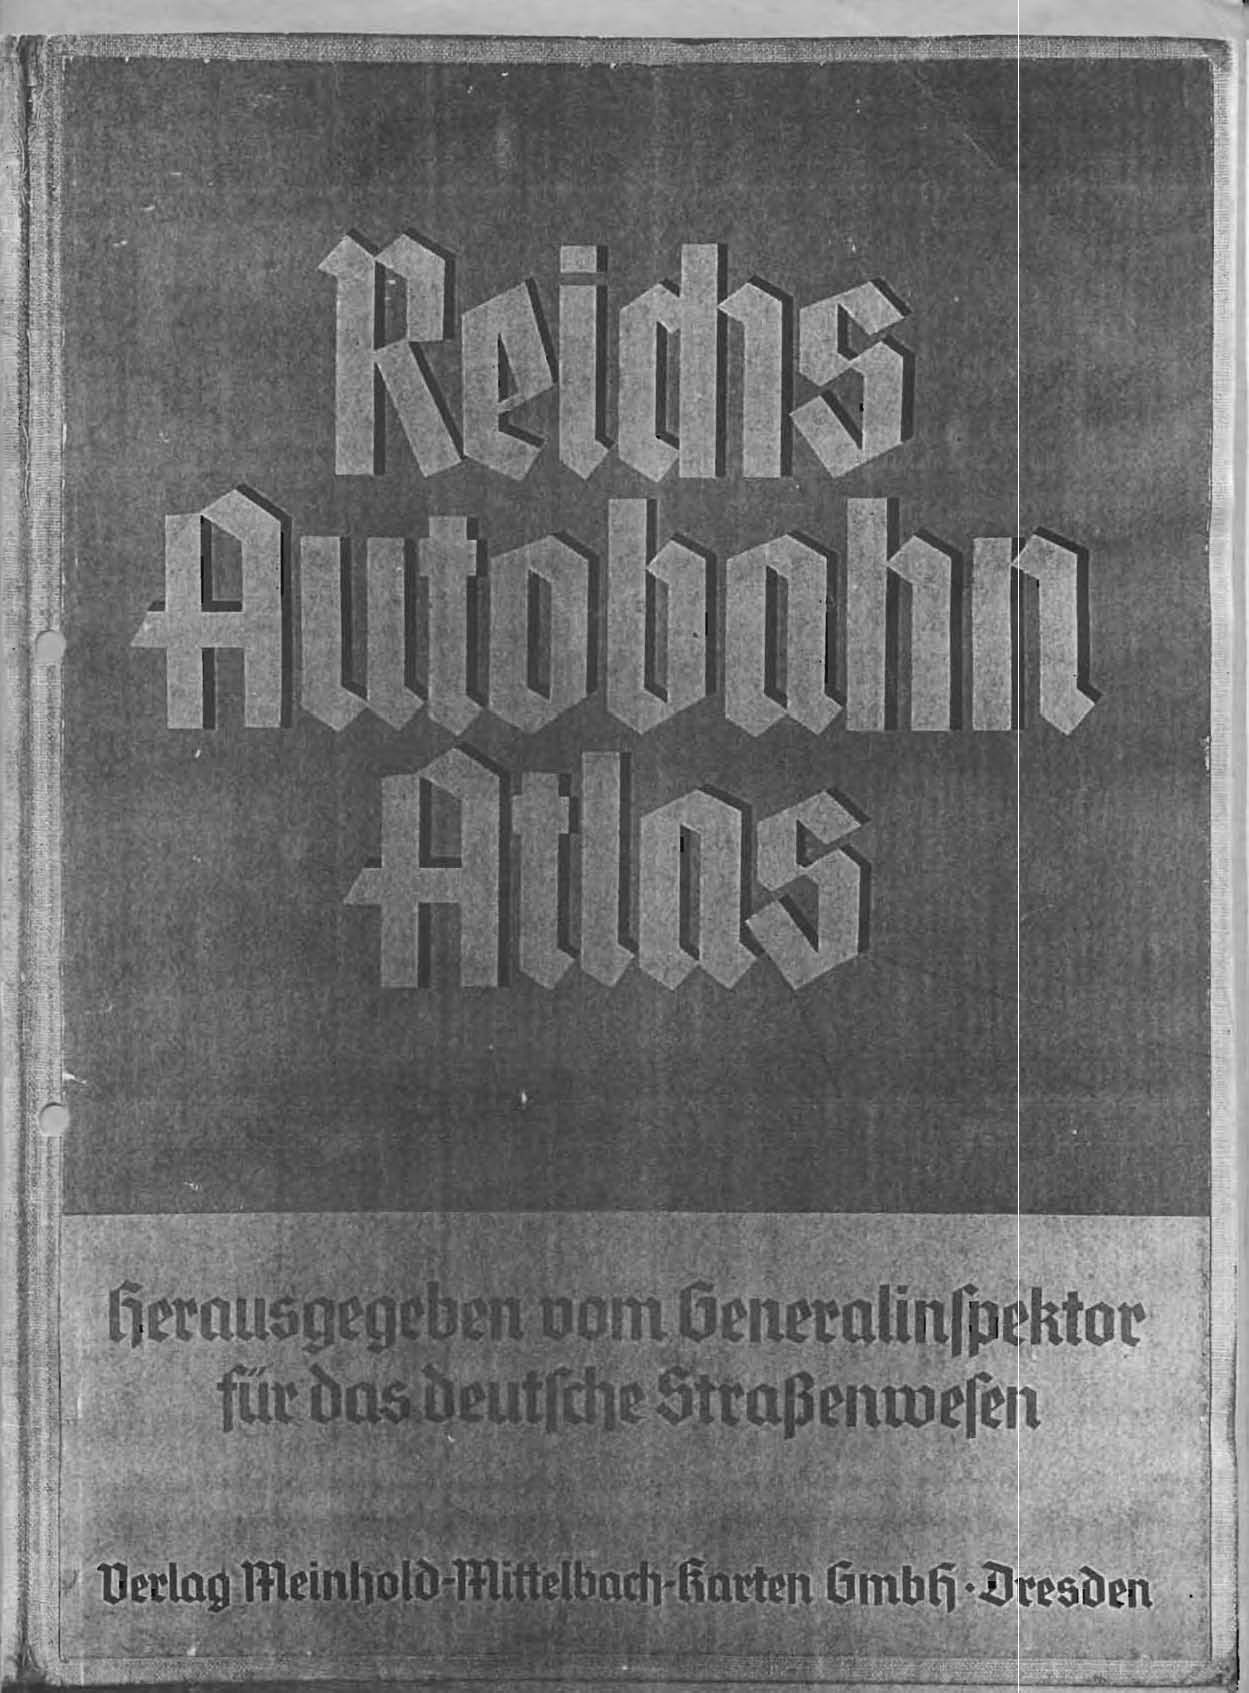 Reichs Autobahn Atlas